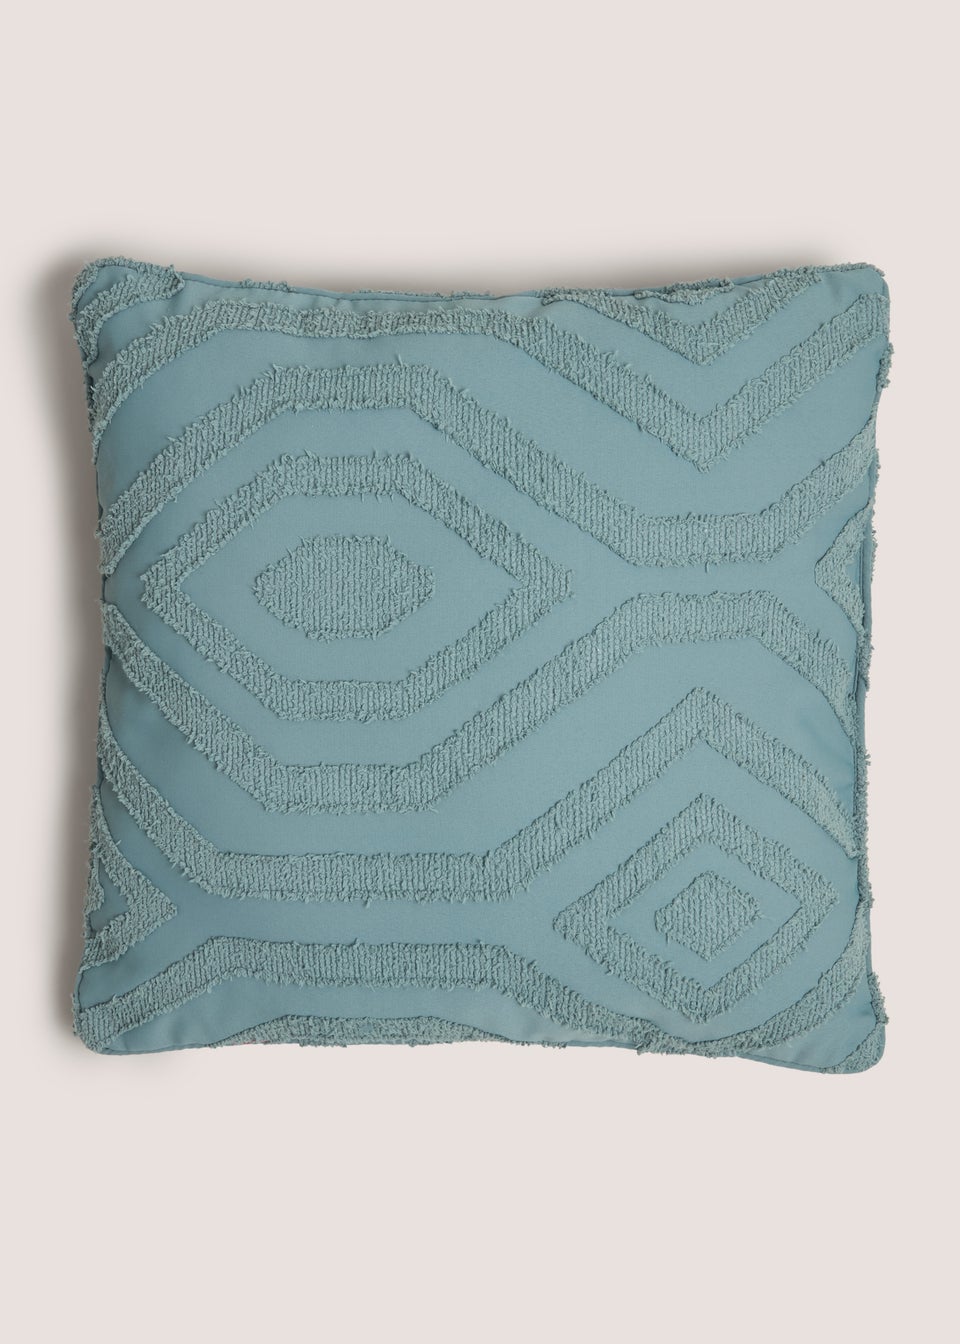 Blue Geo Tufted Cushion (43cm x 43cm)